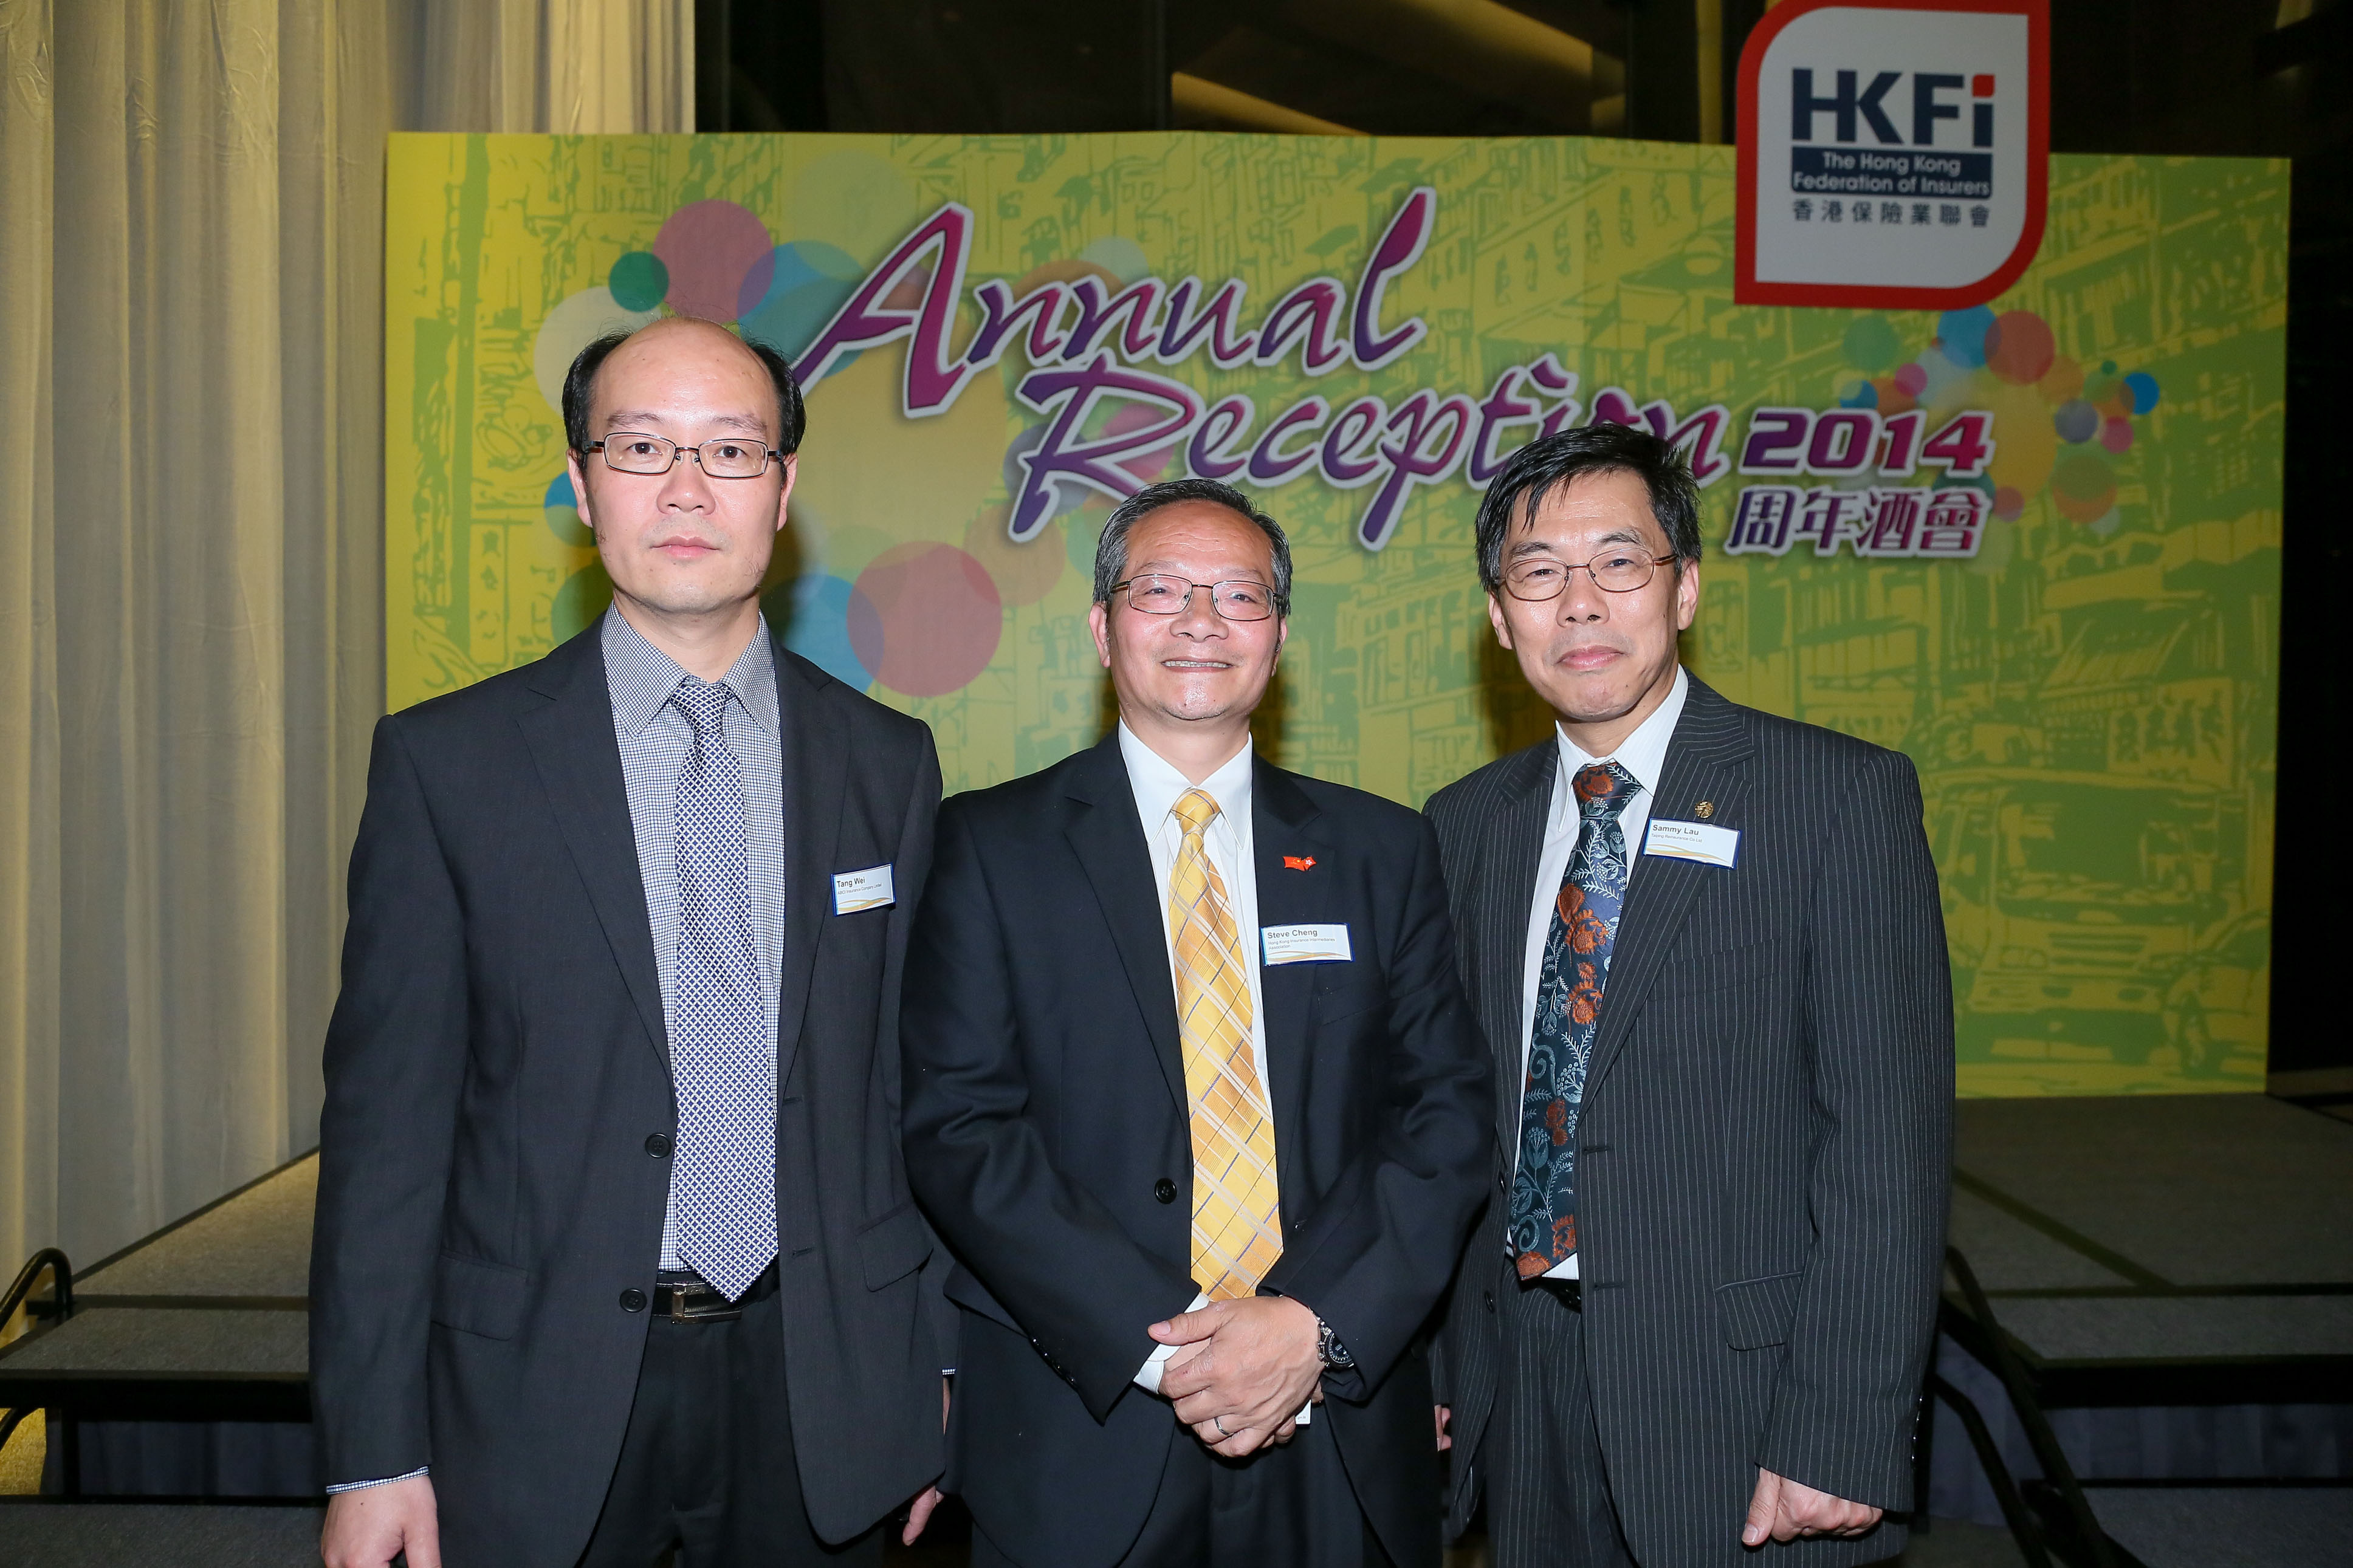 Annual Reception 2014 (2)